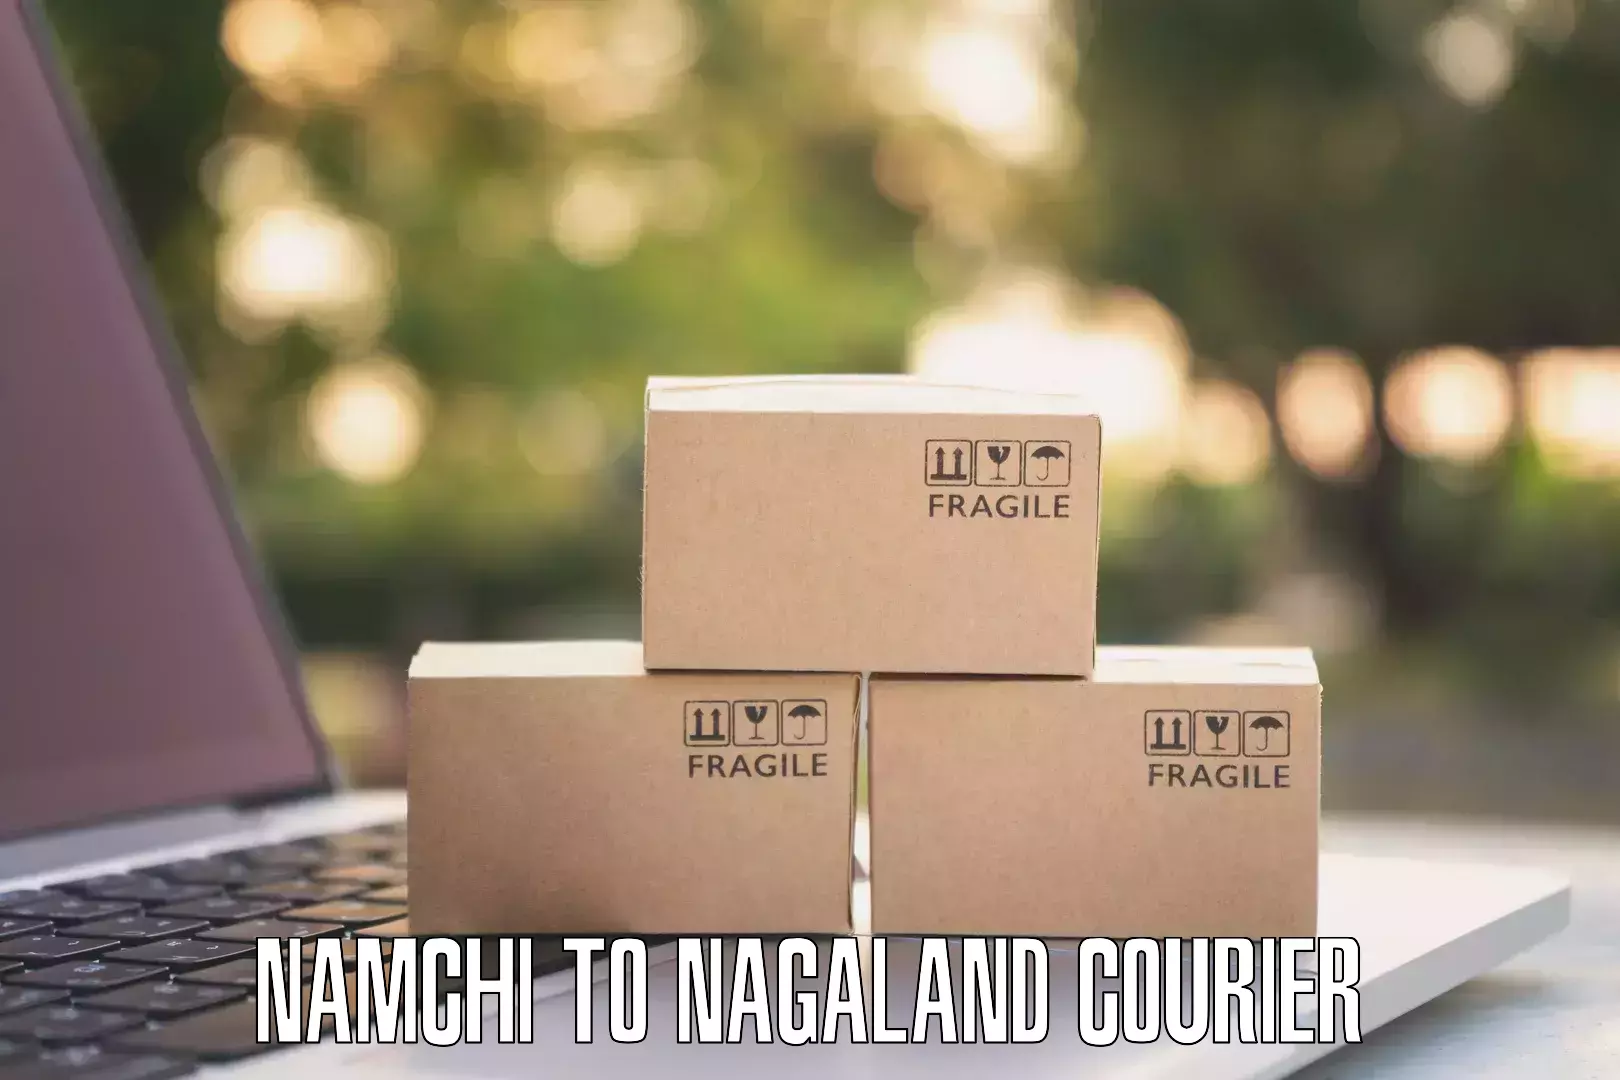 Subscription-based courier Namchi to Wokha